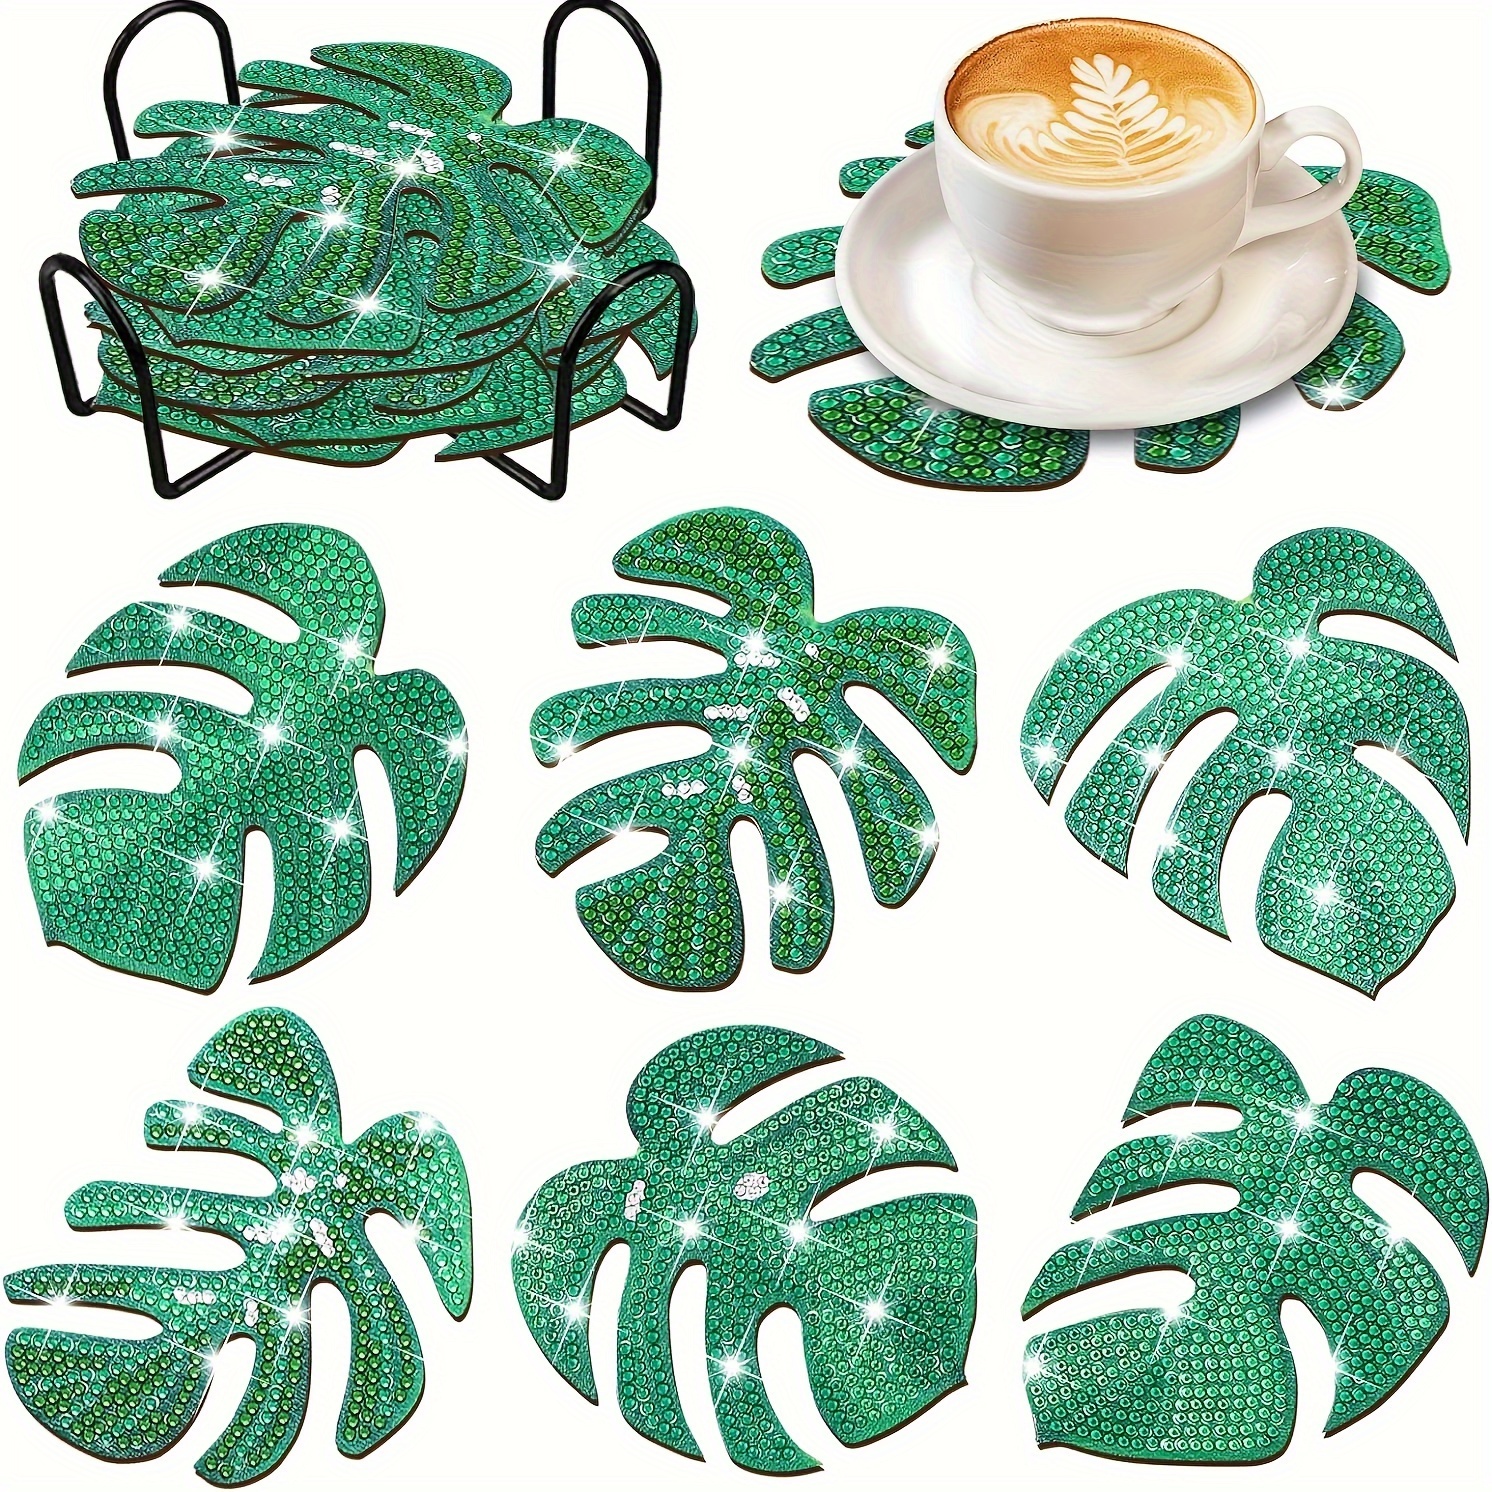  8PCS Animal Diamond Painting Coasters Kit, Shield Shape Diamond  Painting Coasters with Holder, DIY Drink Coasters with Cork Base Diamond  Painting Coasters Kit for Adults Kids Beginners (Animal)